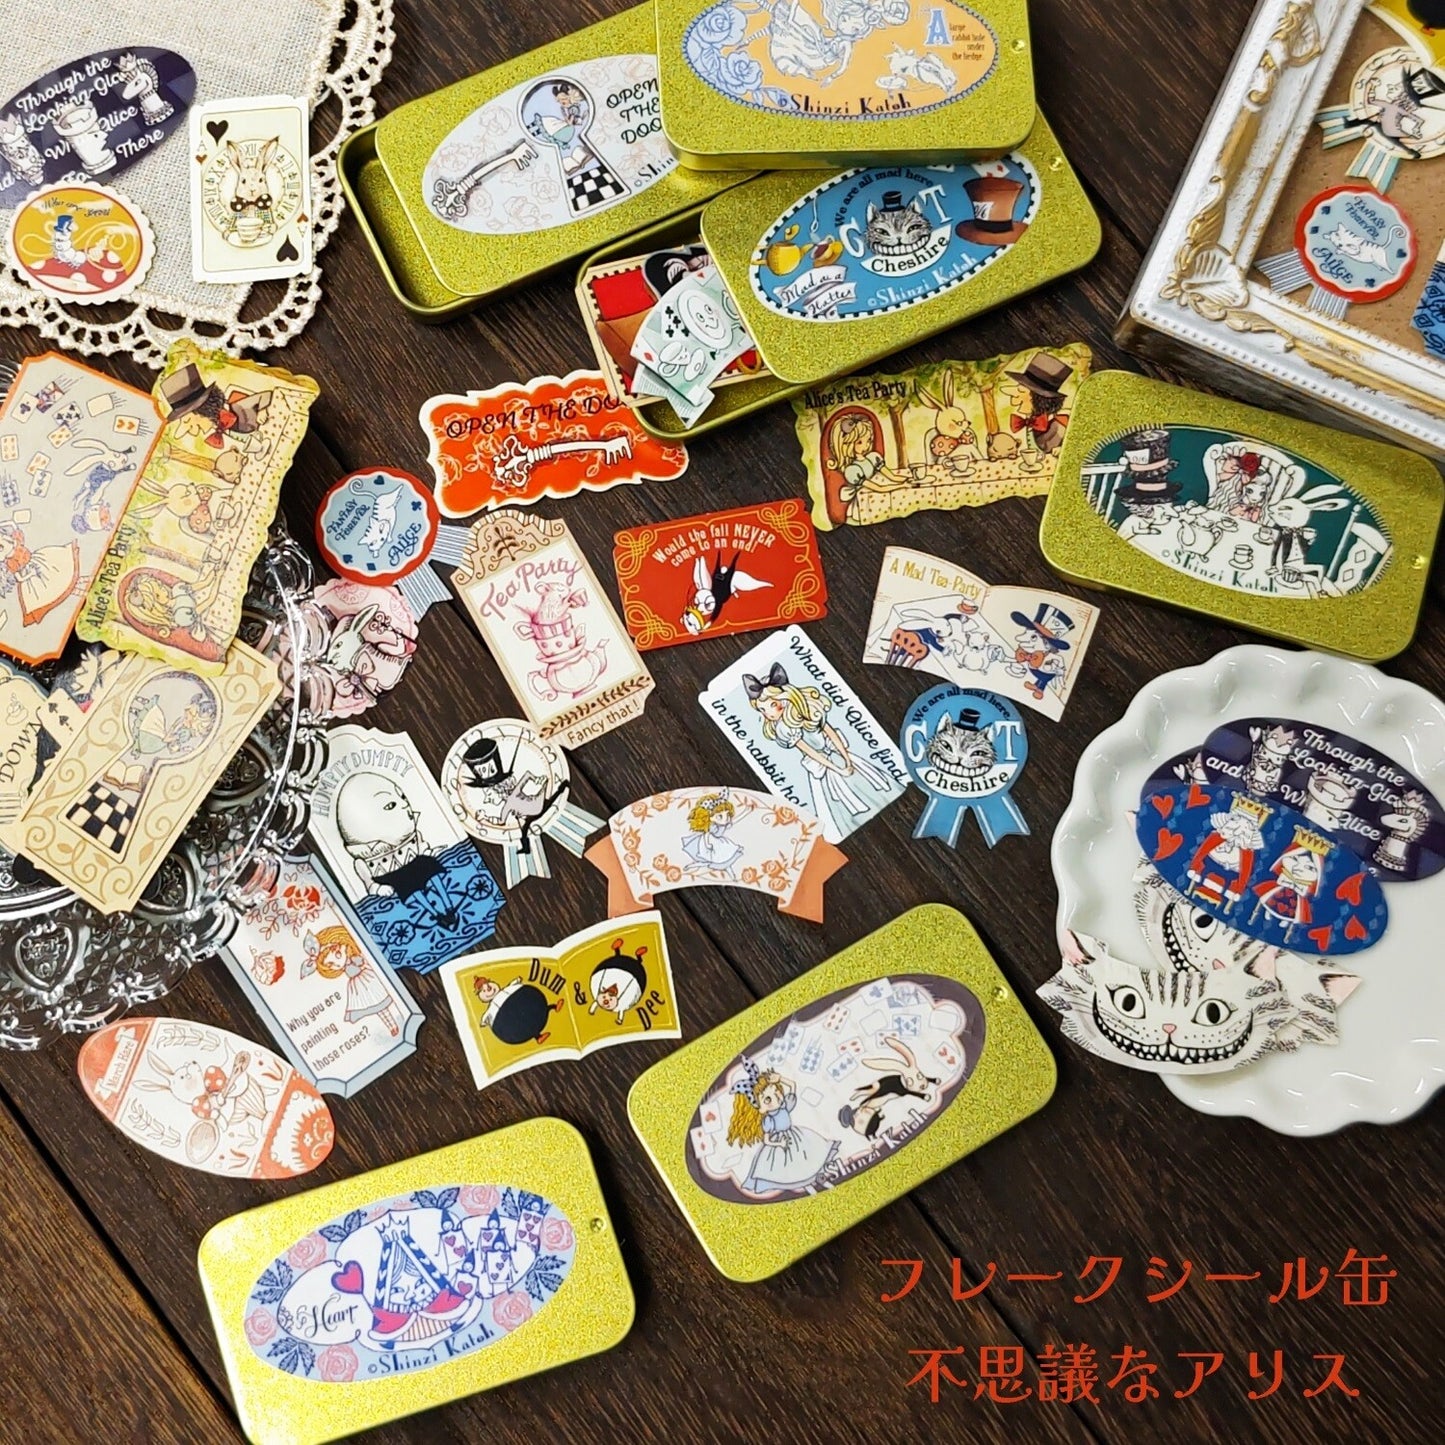 Alice in Wonderland Stickers Flakes in Tin Fantasy Forever Alice Shinzi Katoh Design